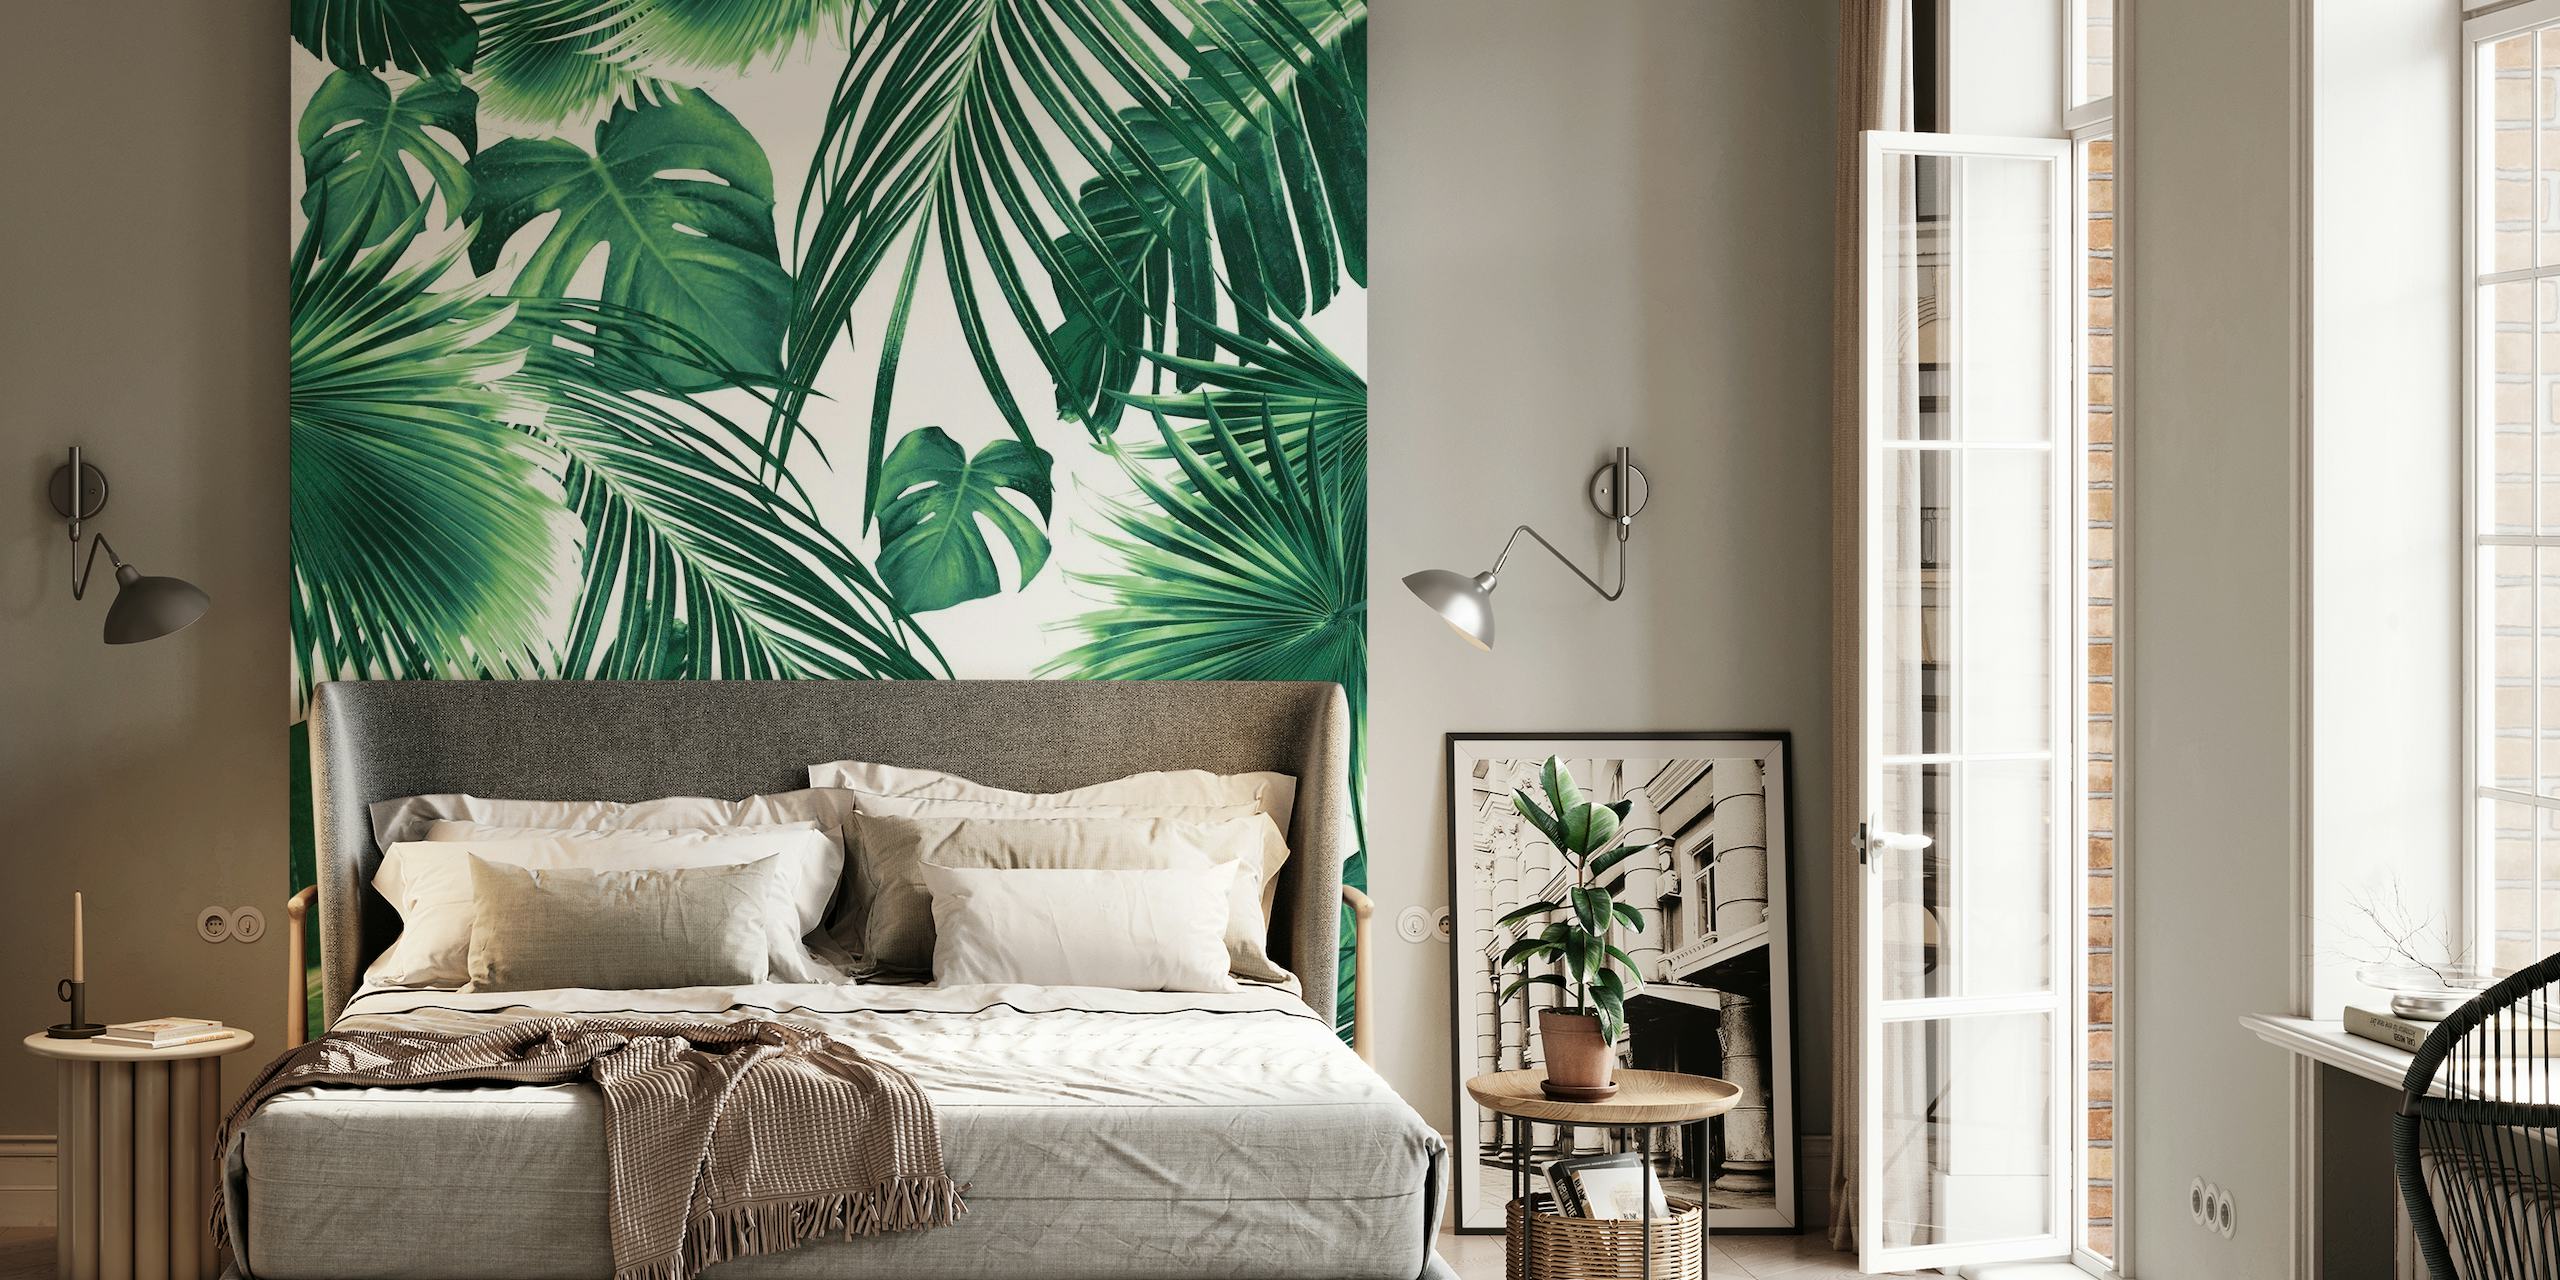 Um mural de parede exuberante com um padrão denso de folhas da selva tropical em tons de verde